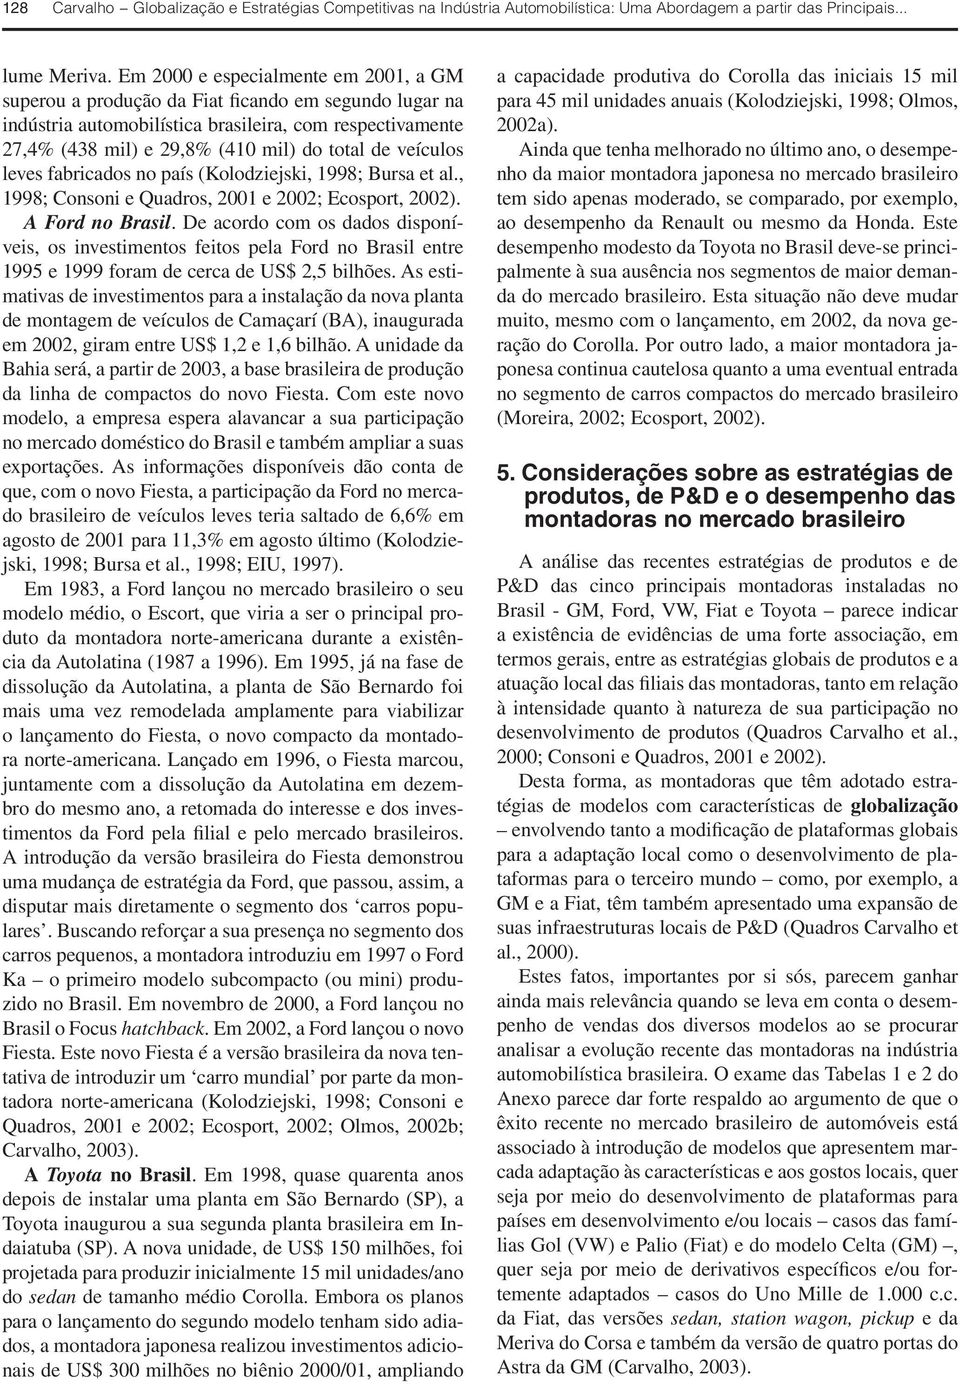 veículos leves fabricados no país (Kolodziejski, 1998; Bursa et al., 1998; Consoni e Quadros, 2001 e 2002; Ecosport, 2002). A Ford no Brasil.